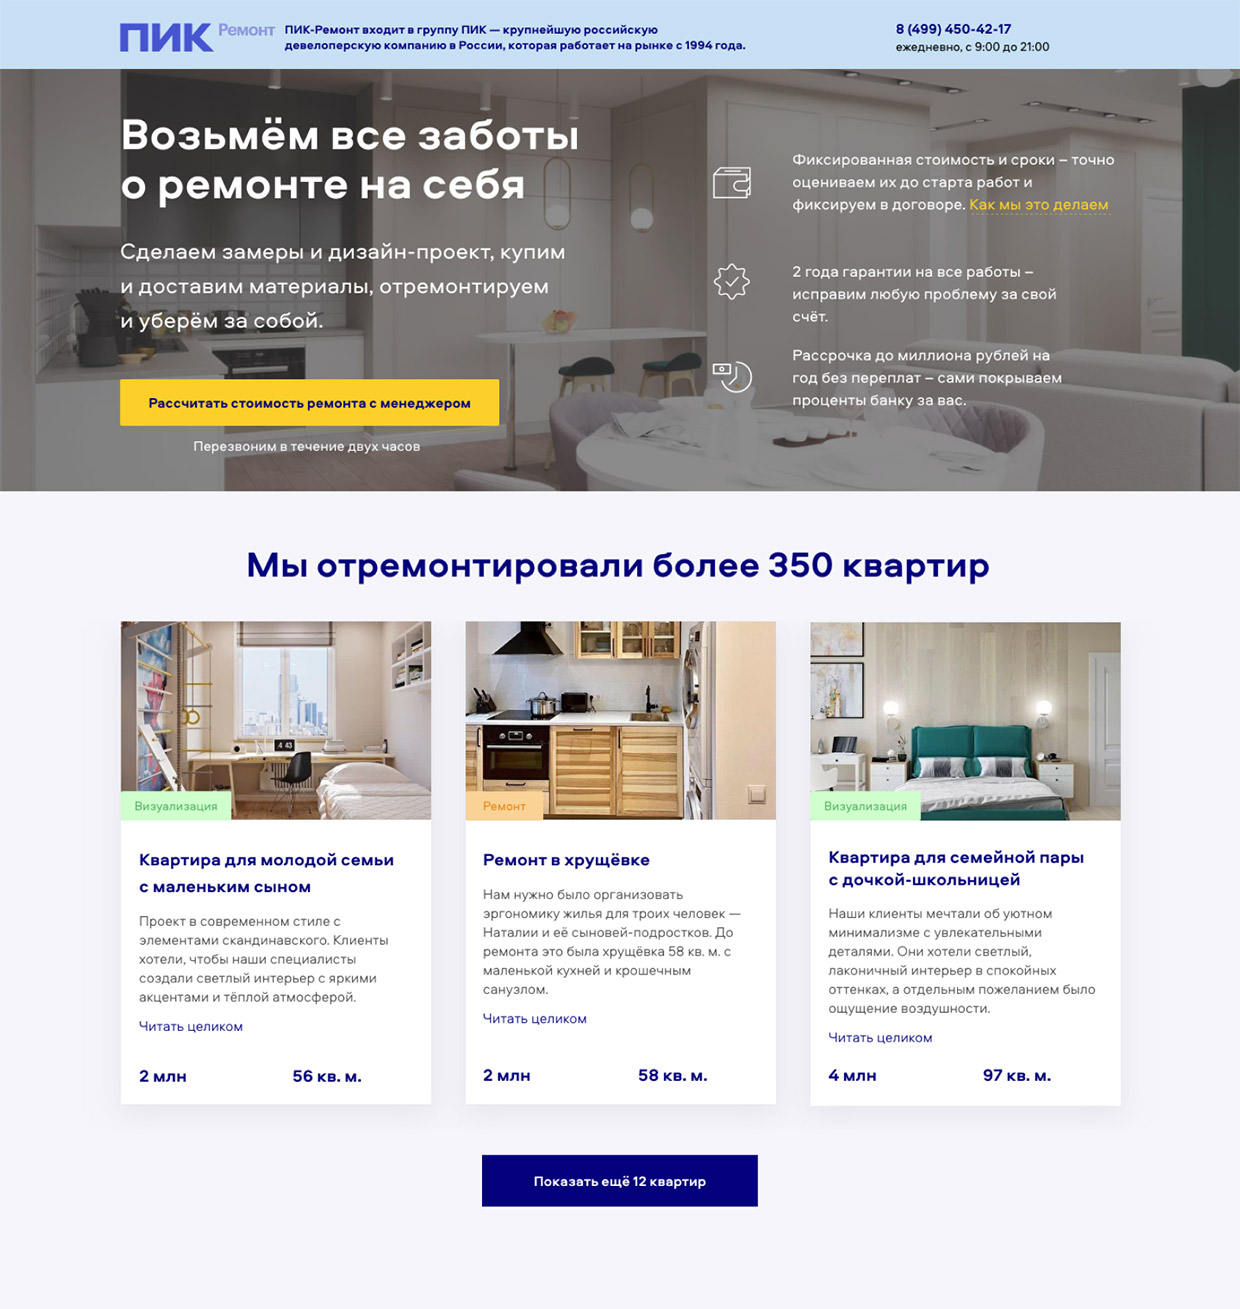 IT-Agency - Веб-разработка и дизайн сайтов